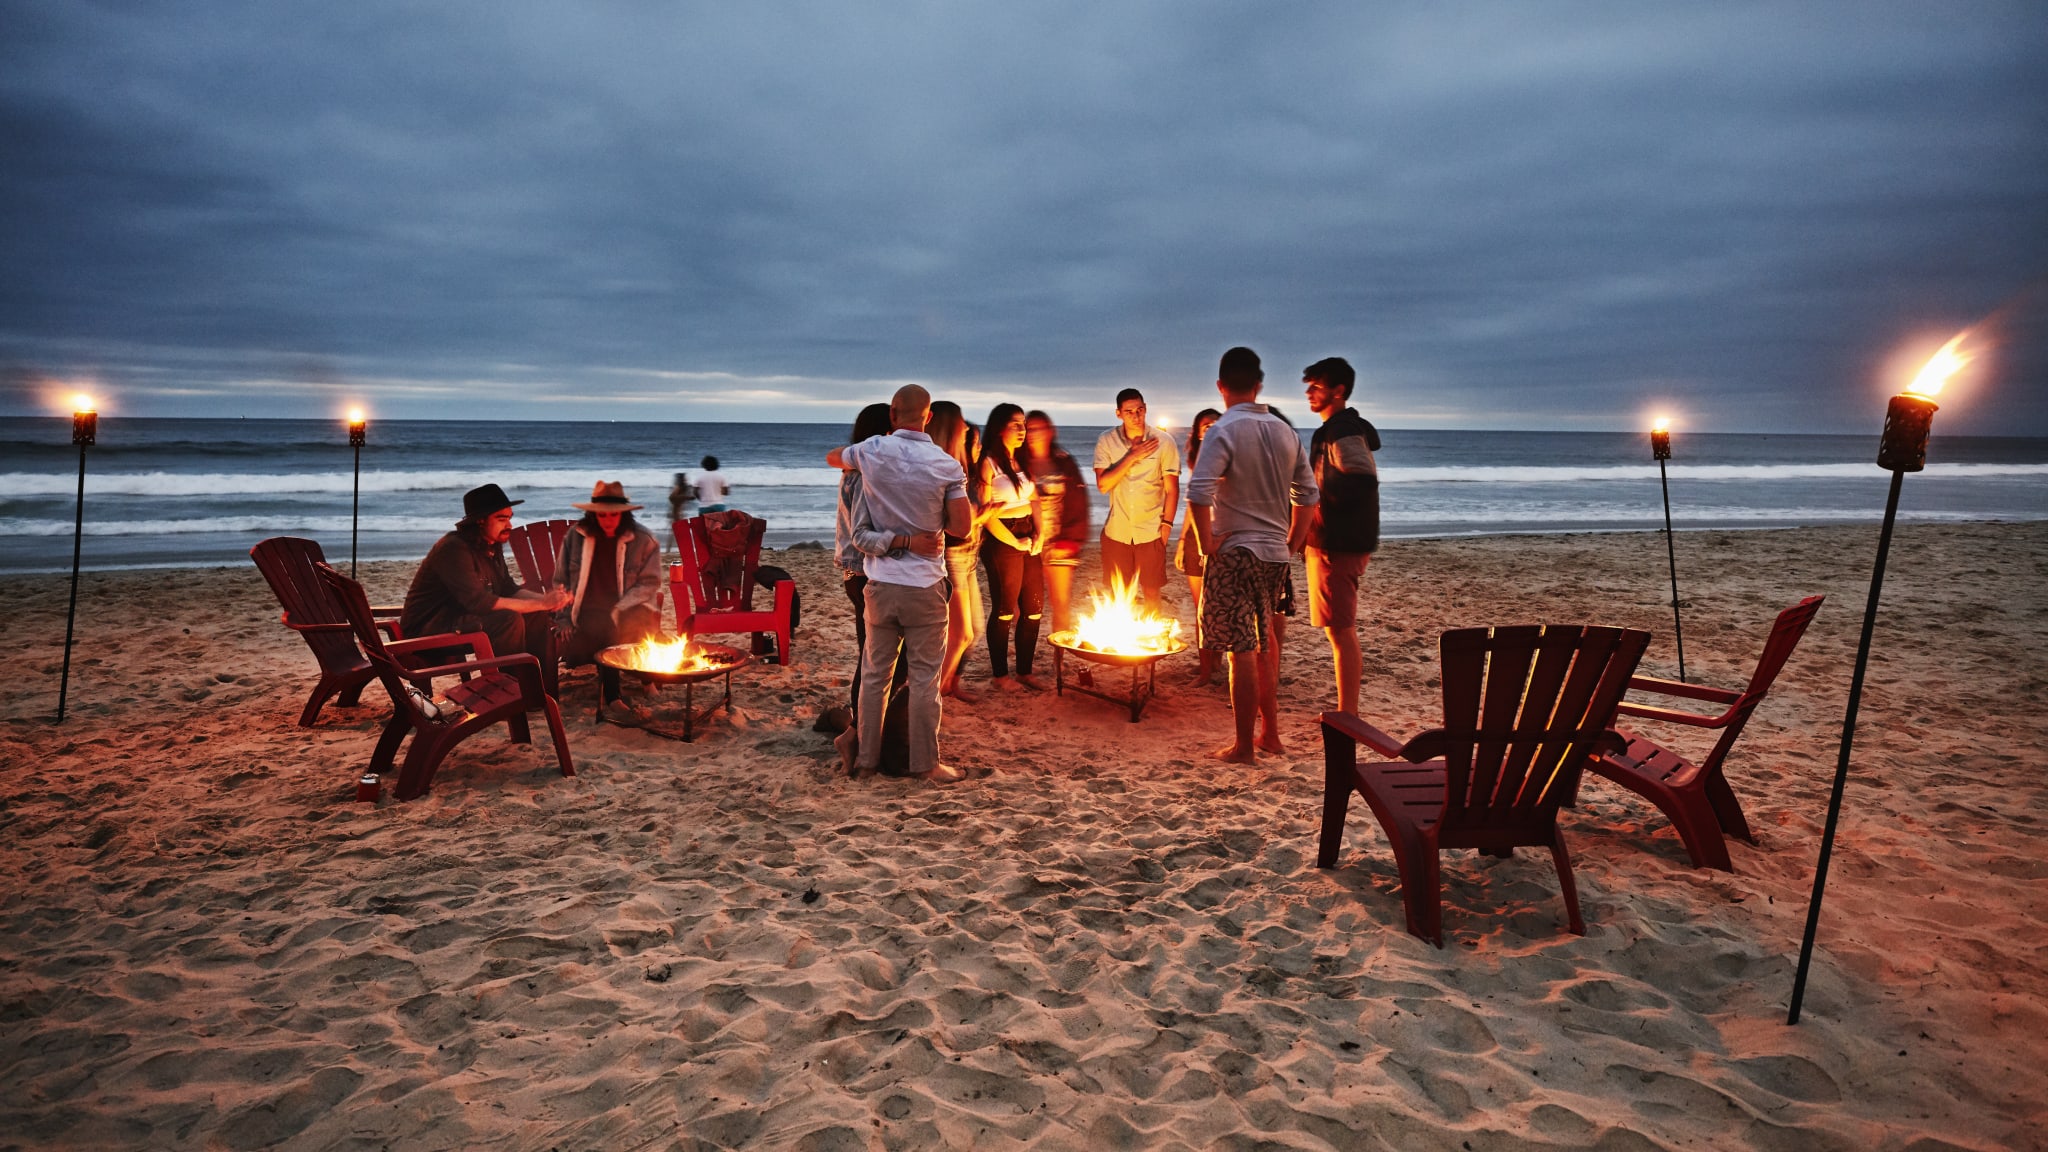 Freunde feiern am Strand mit Lagerfeuer